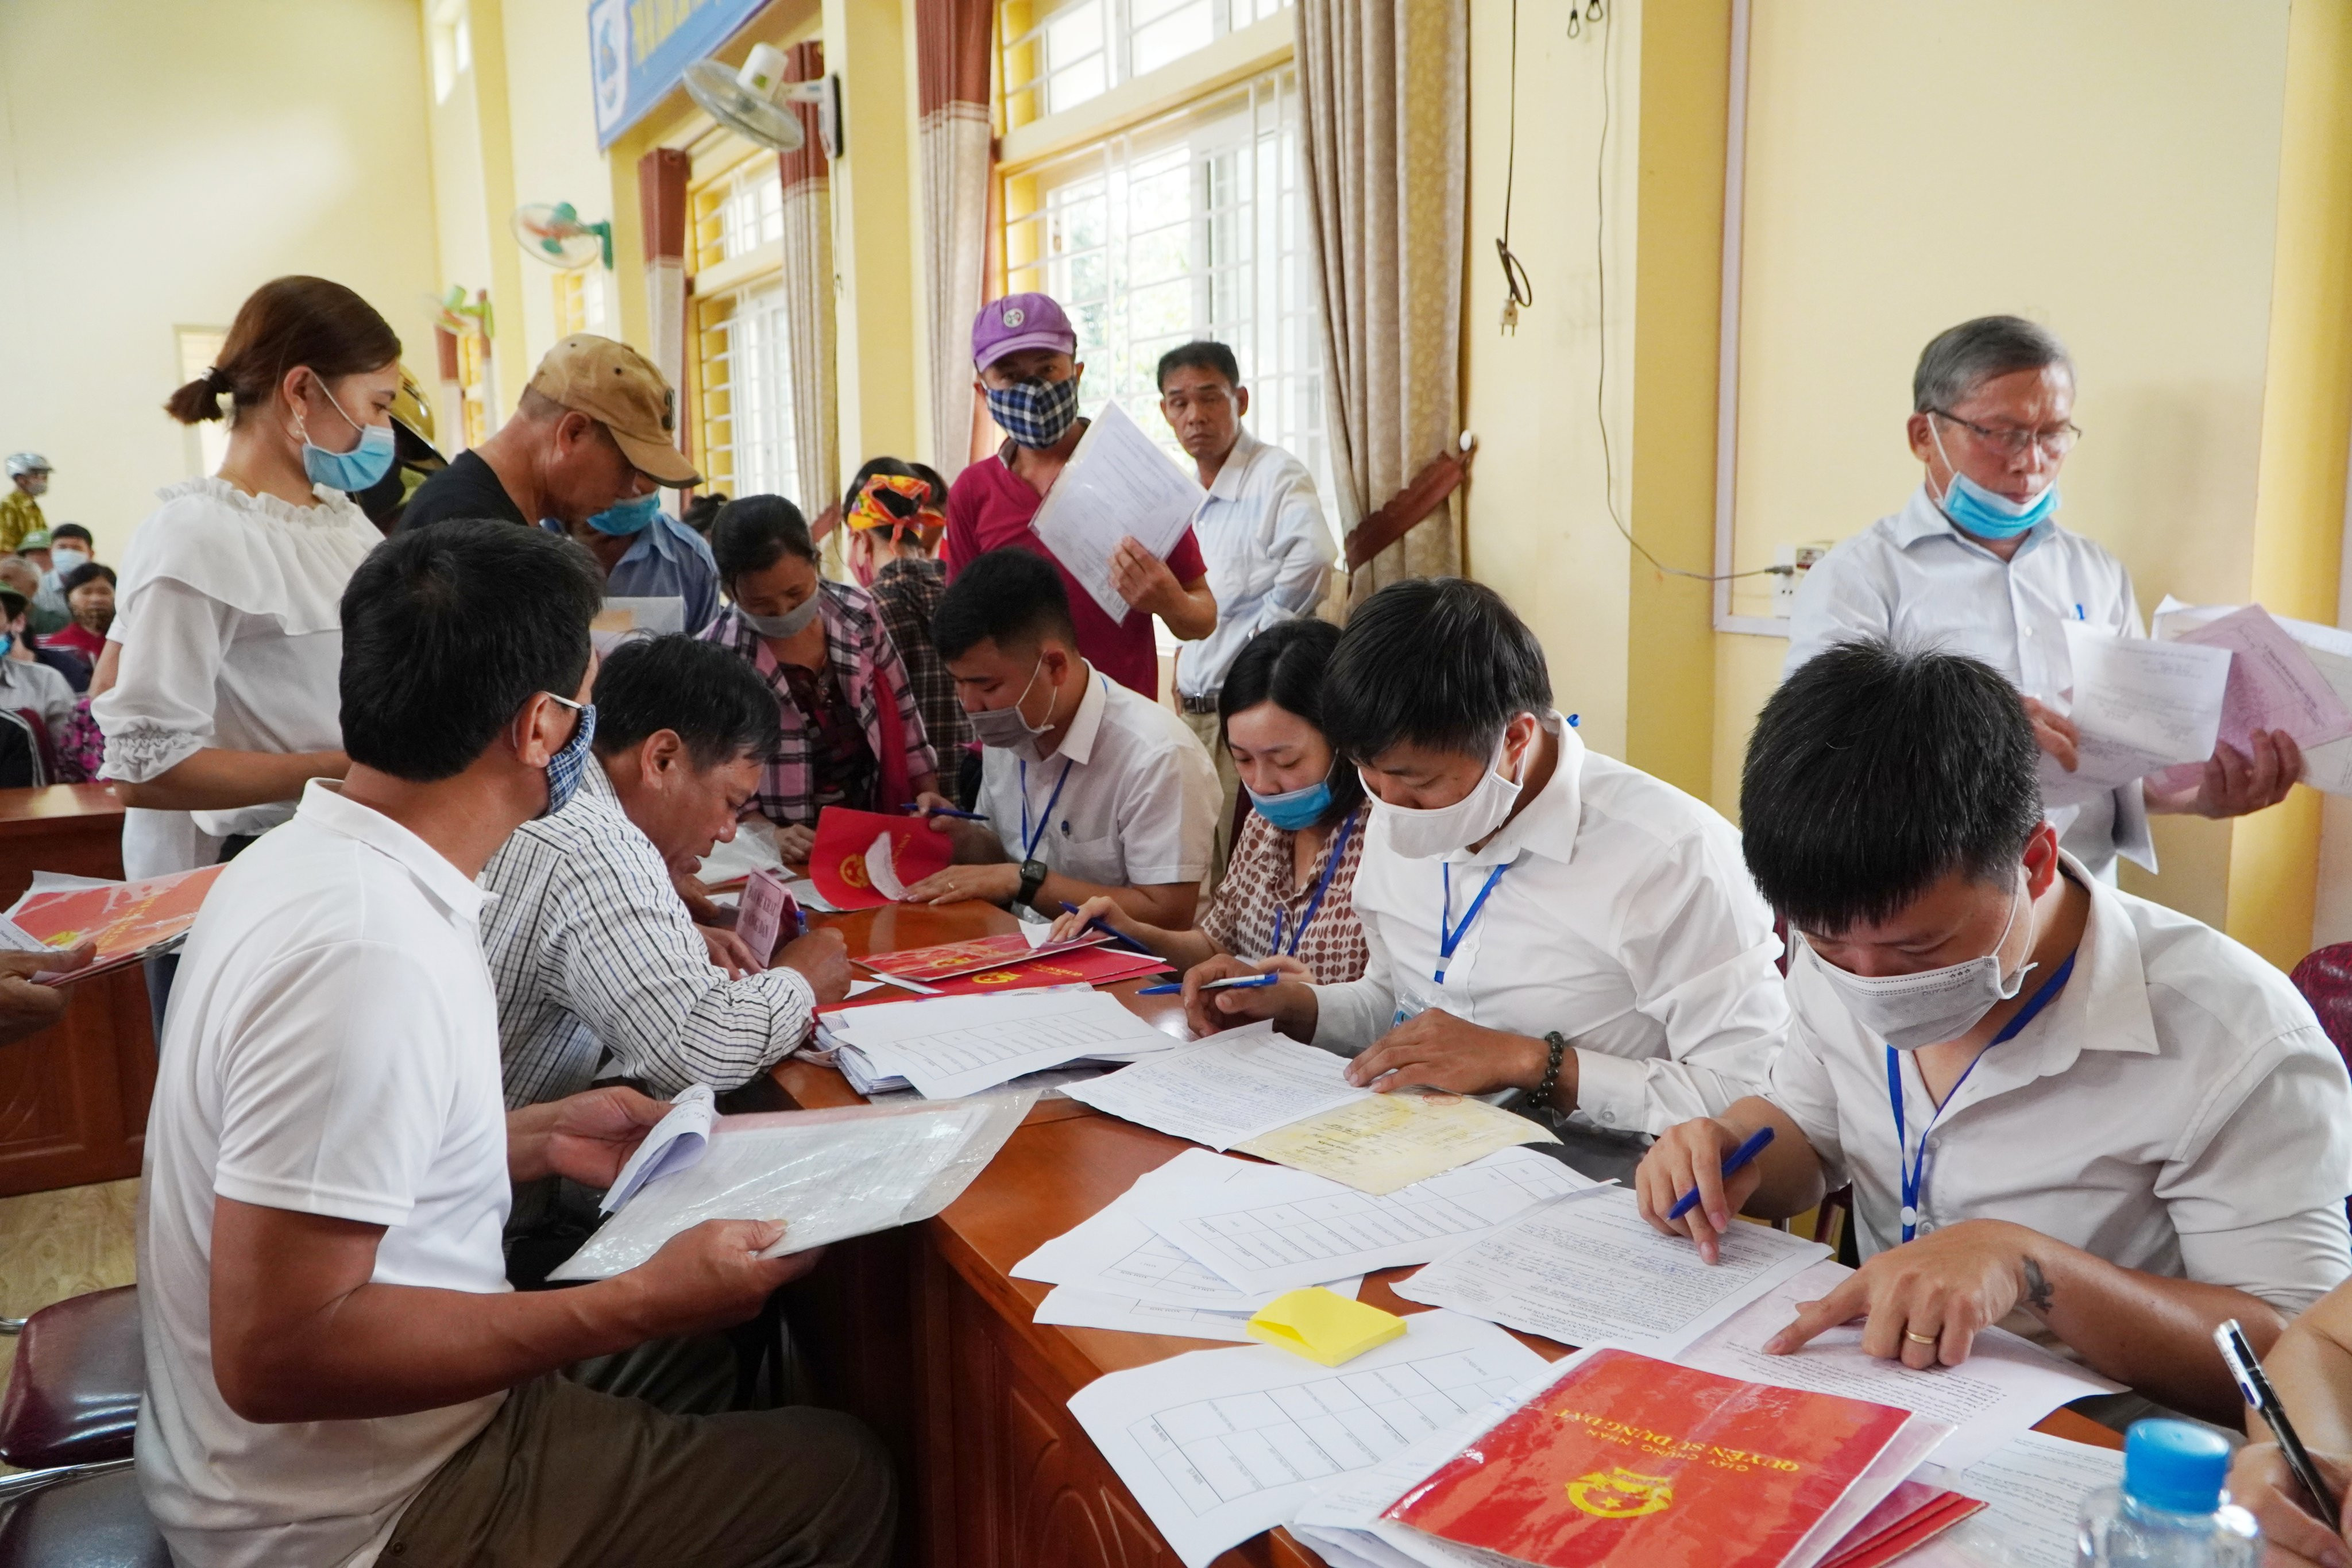 Chi nhánh Văn phòng Đăng ký đất huyện Hưng Nguyên thực hiện ngày thứ 7, Chủ nhật vì dân để giải quyết hồ sơ cấp giấy chứng nhận quyền sử dụng đất cho người dân. Ảnh: Mai Hoa